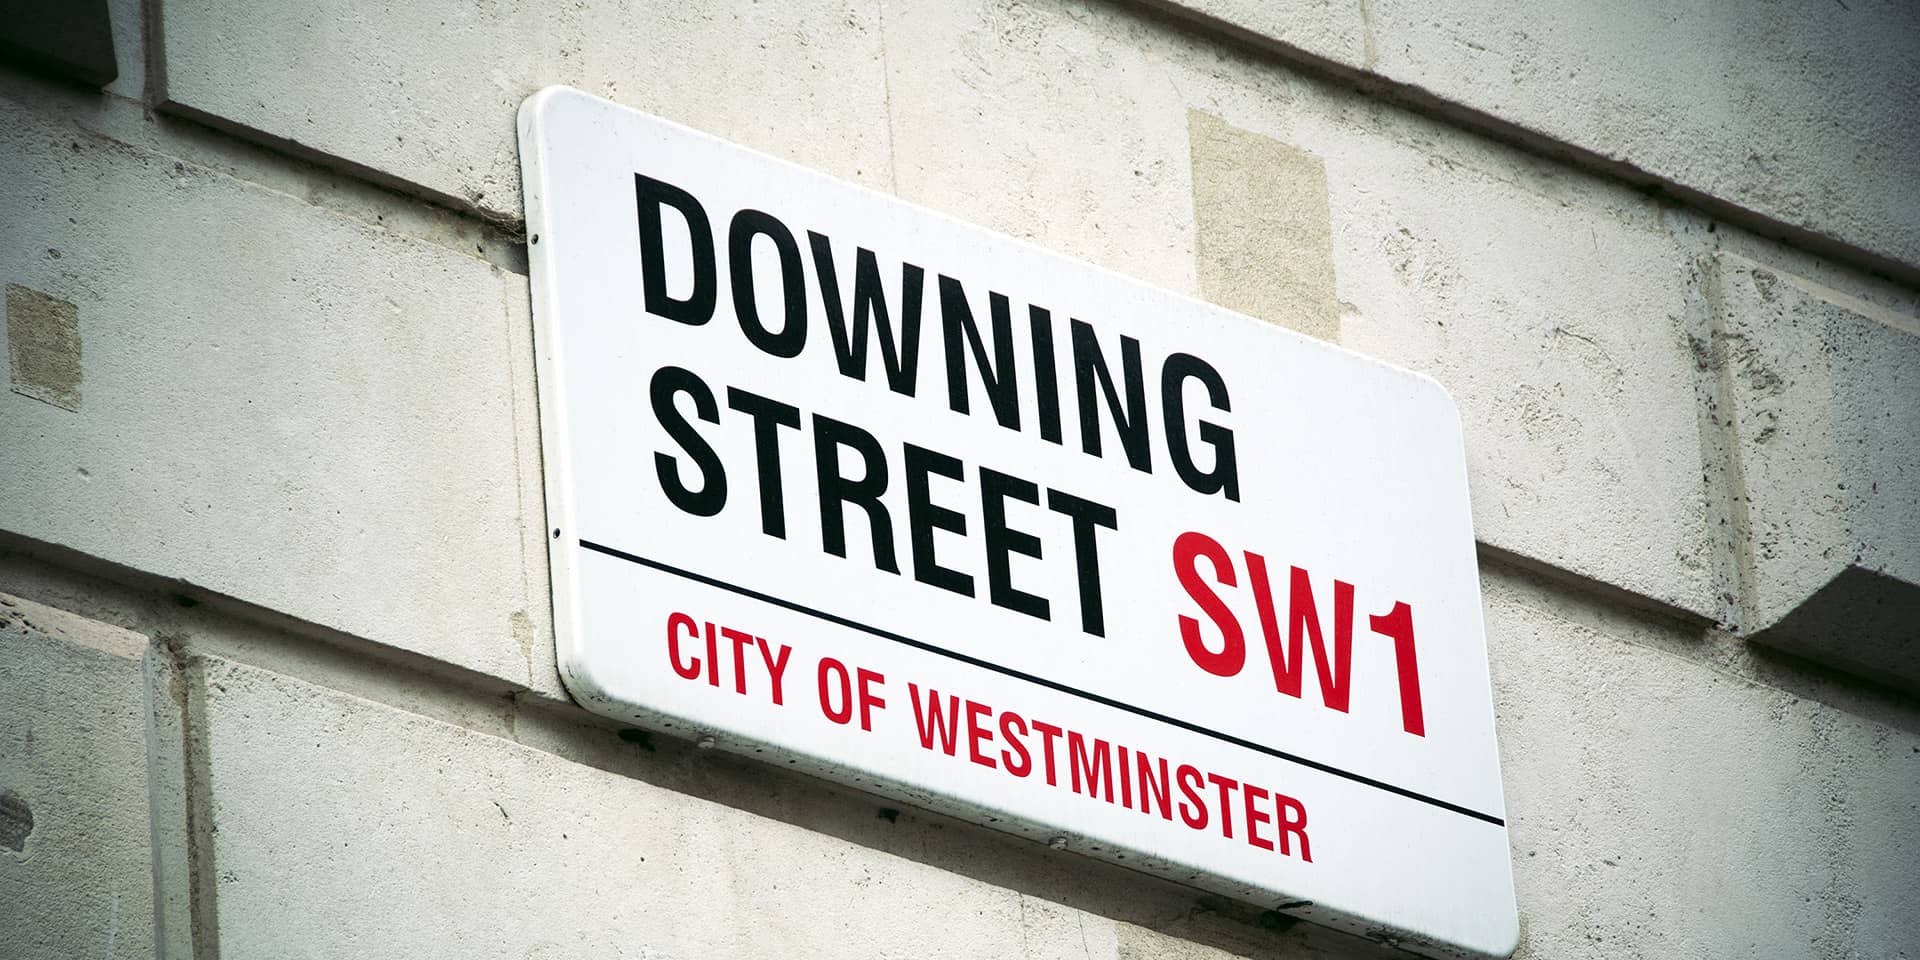 Billede af gadeskilt i London, Downing Street